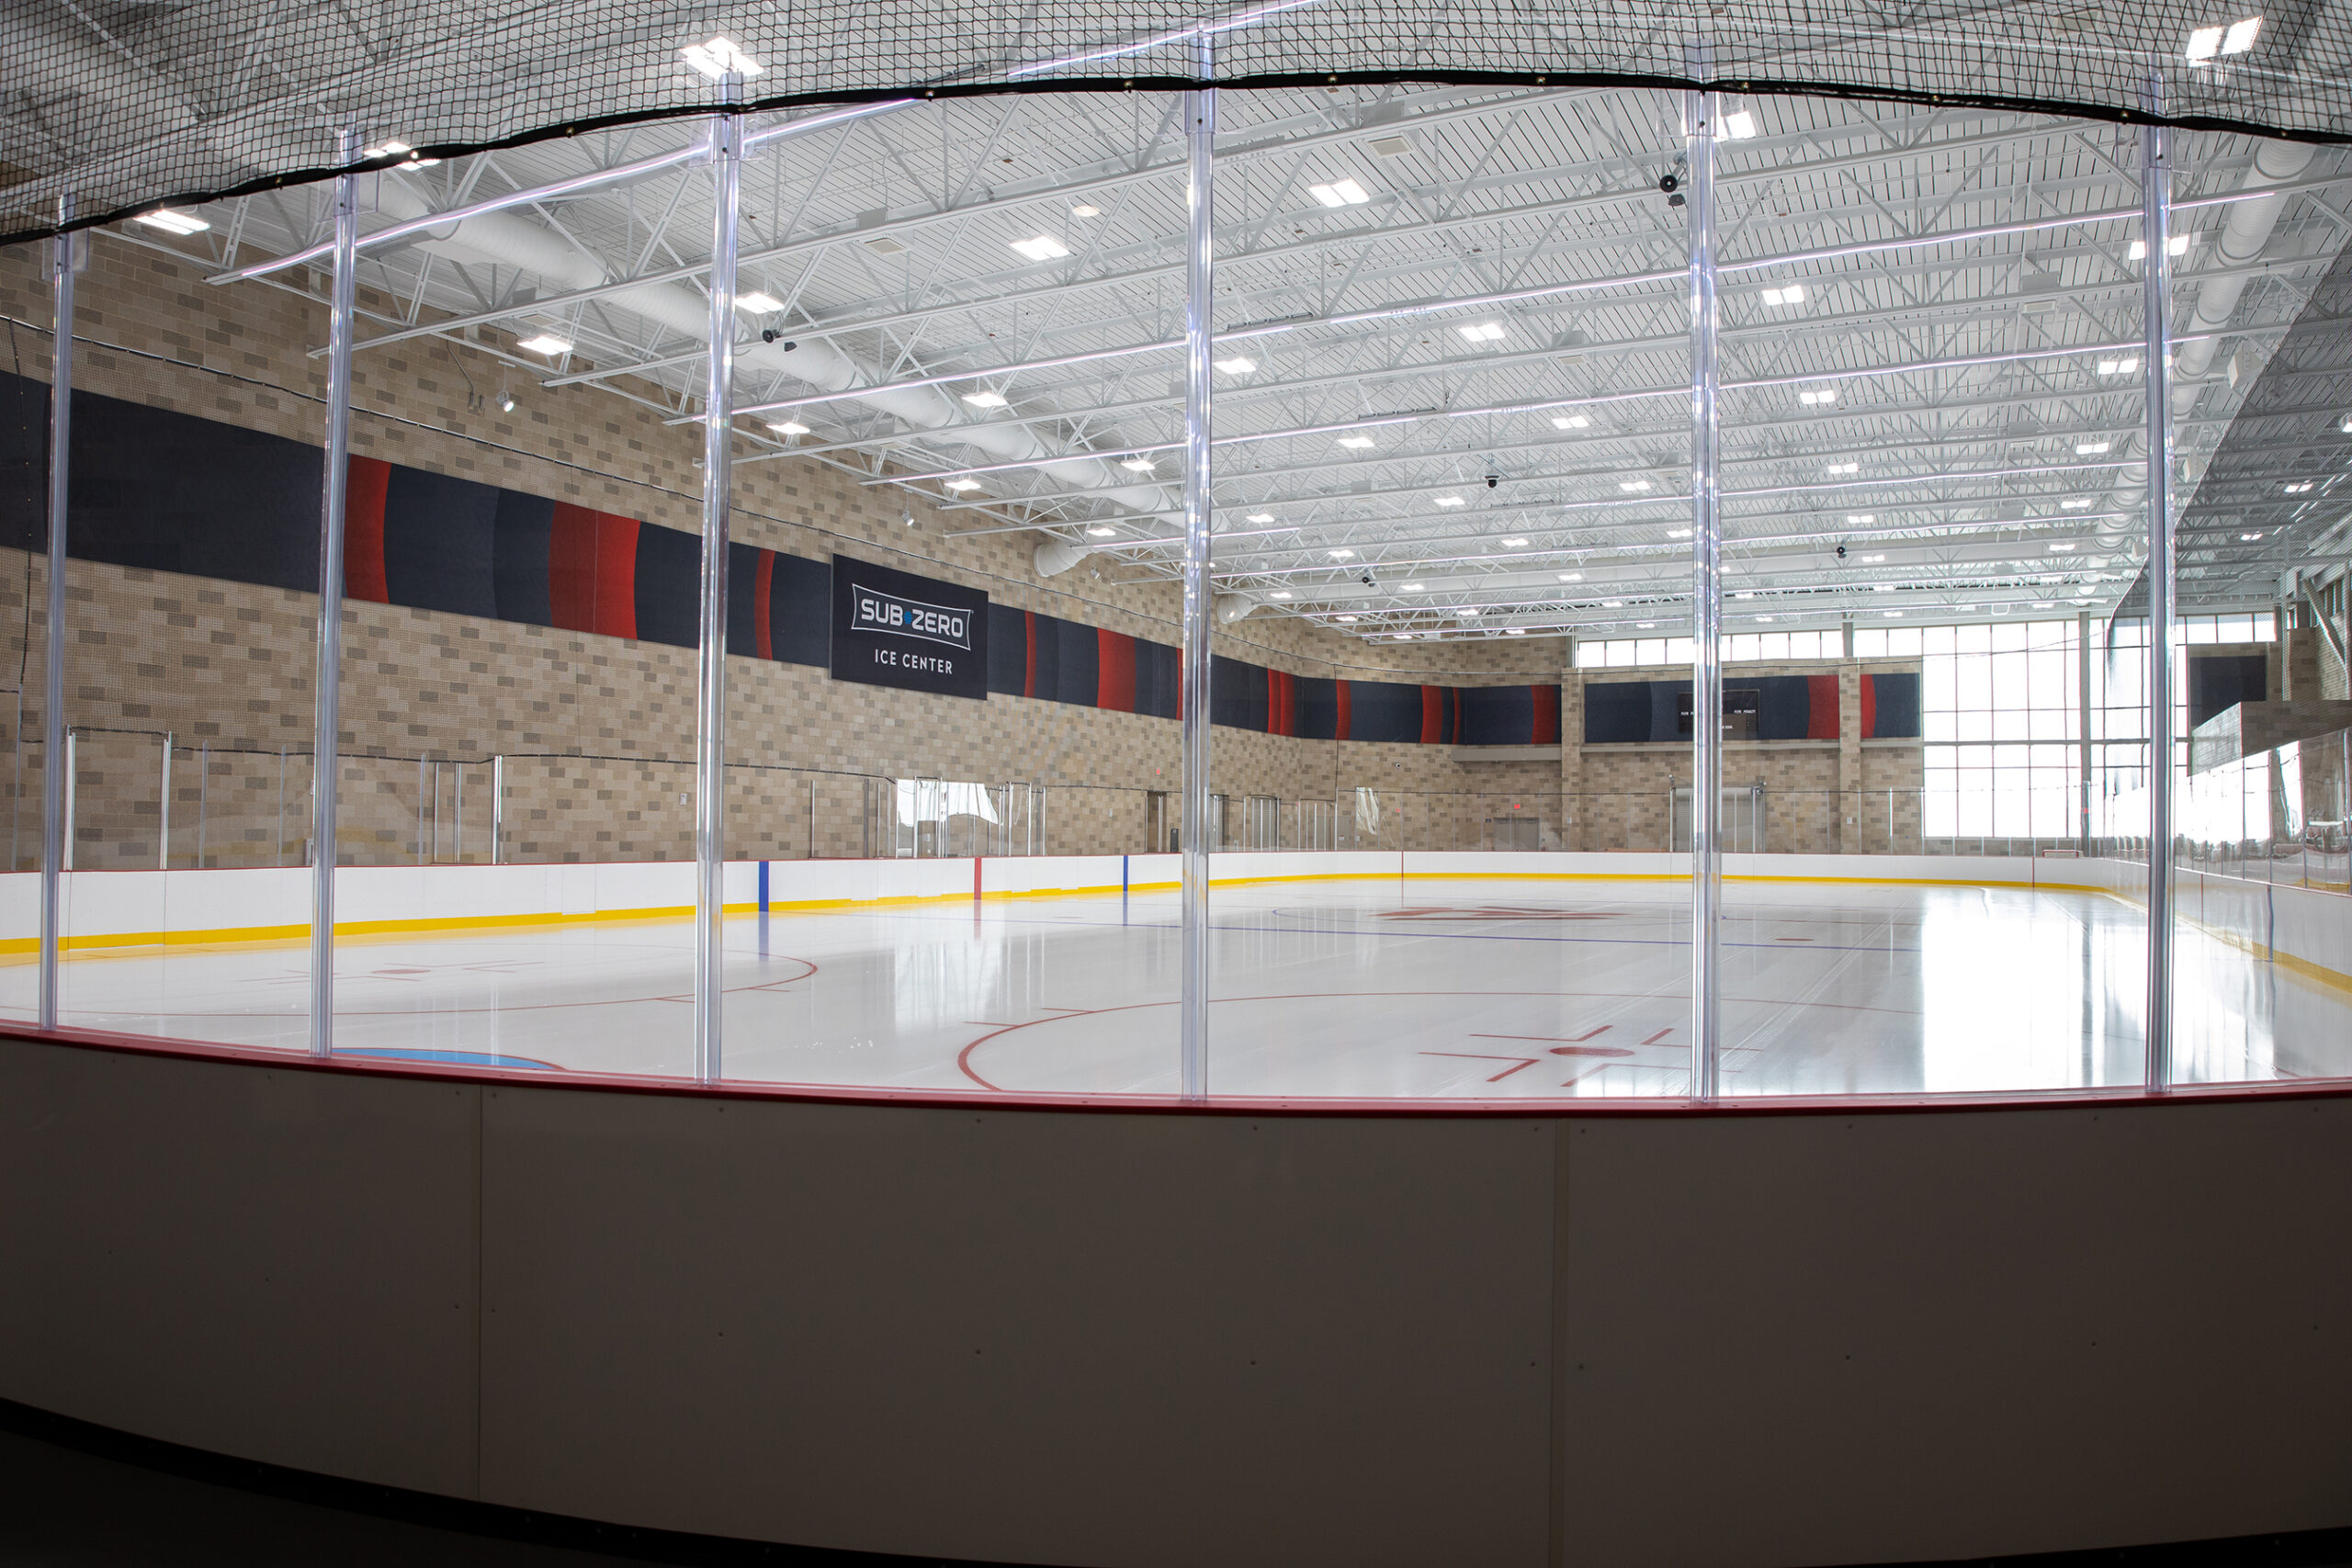 Bakke Recreation & Wellbeing Ice Center SEG Frames